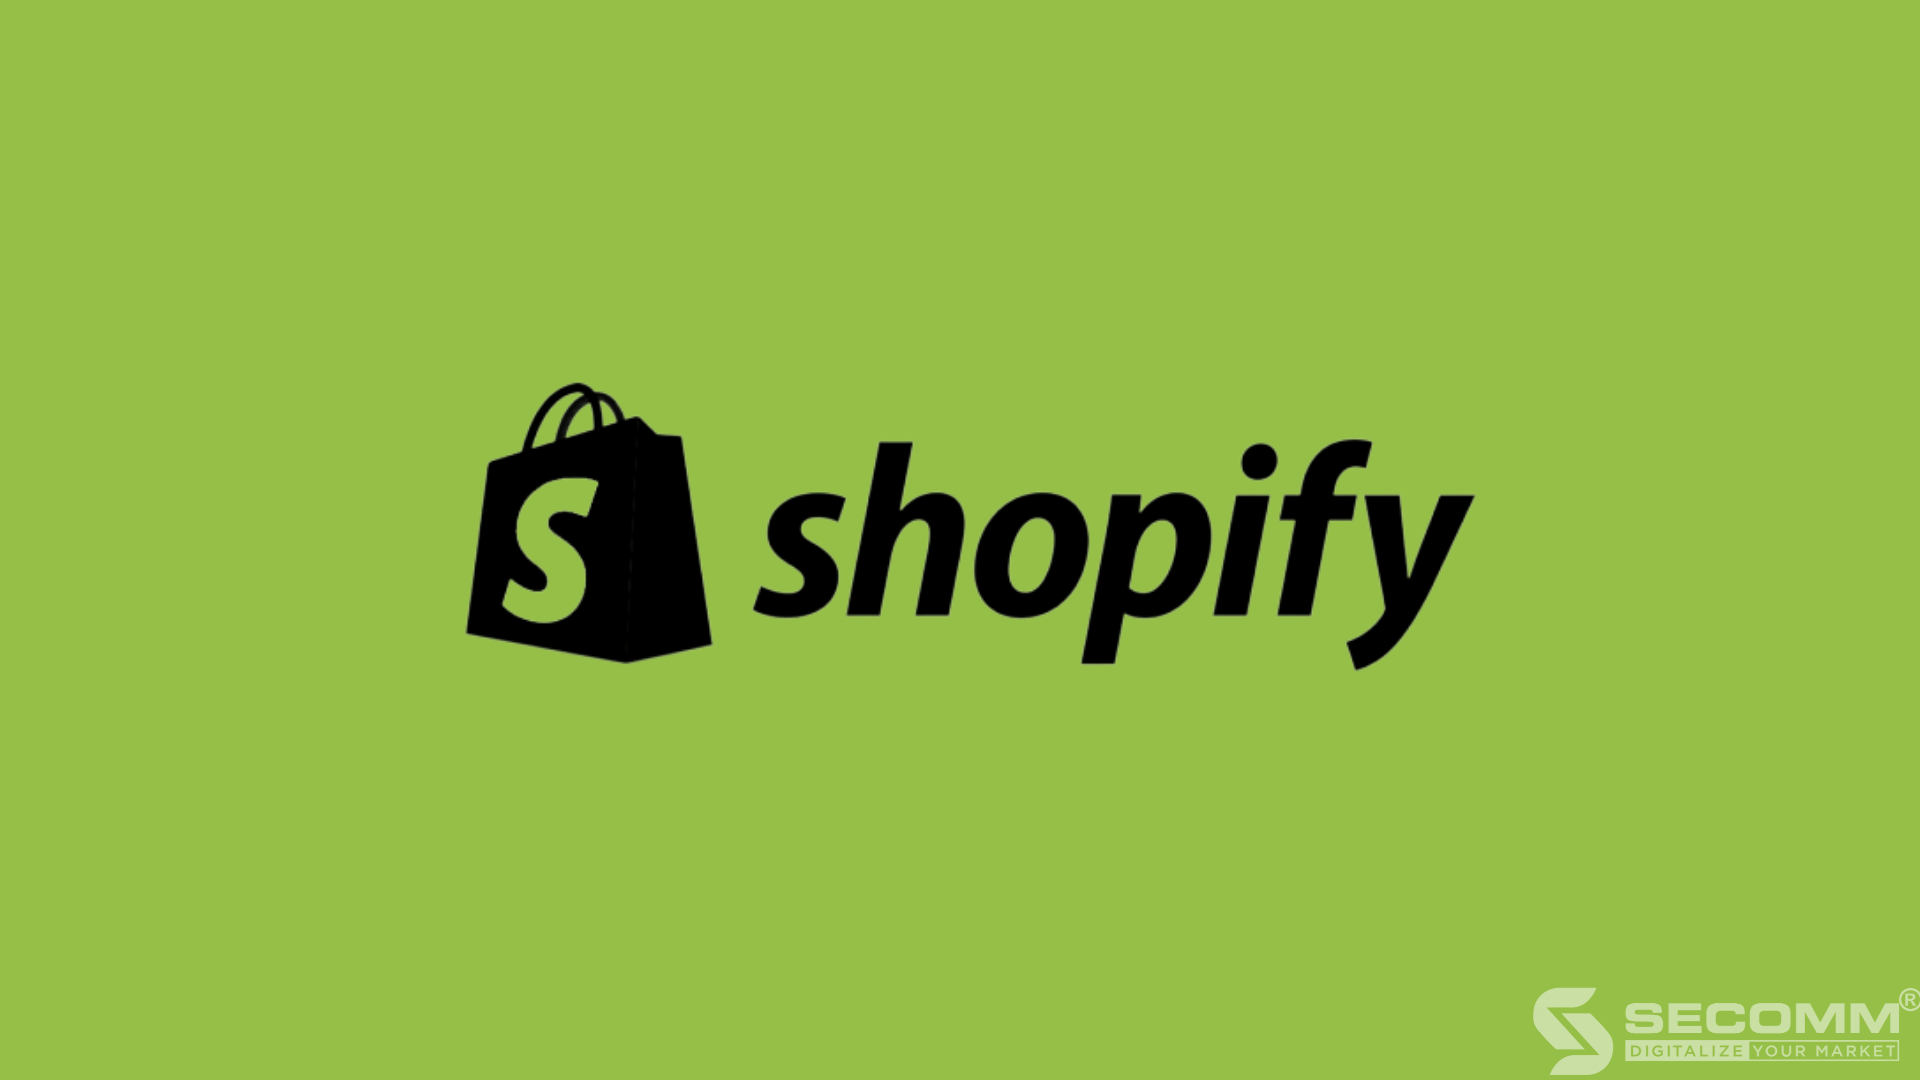 Shopify là nền tảng SaaS được thiết kế dành cho các cửa hàng trực tuyến và hệ thống điểm bán lẻ